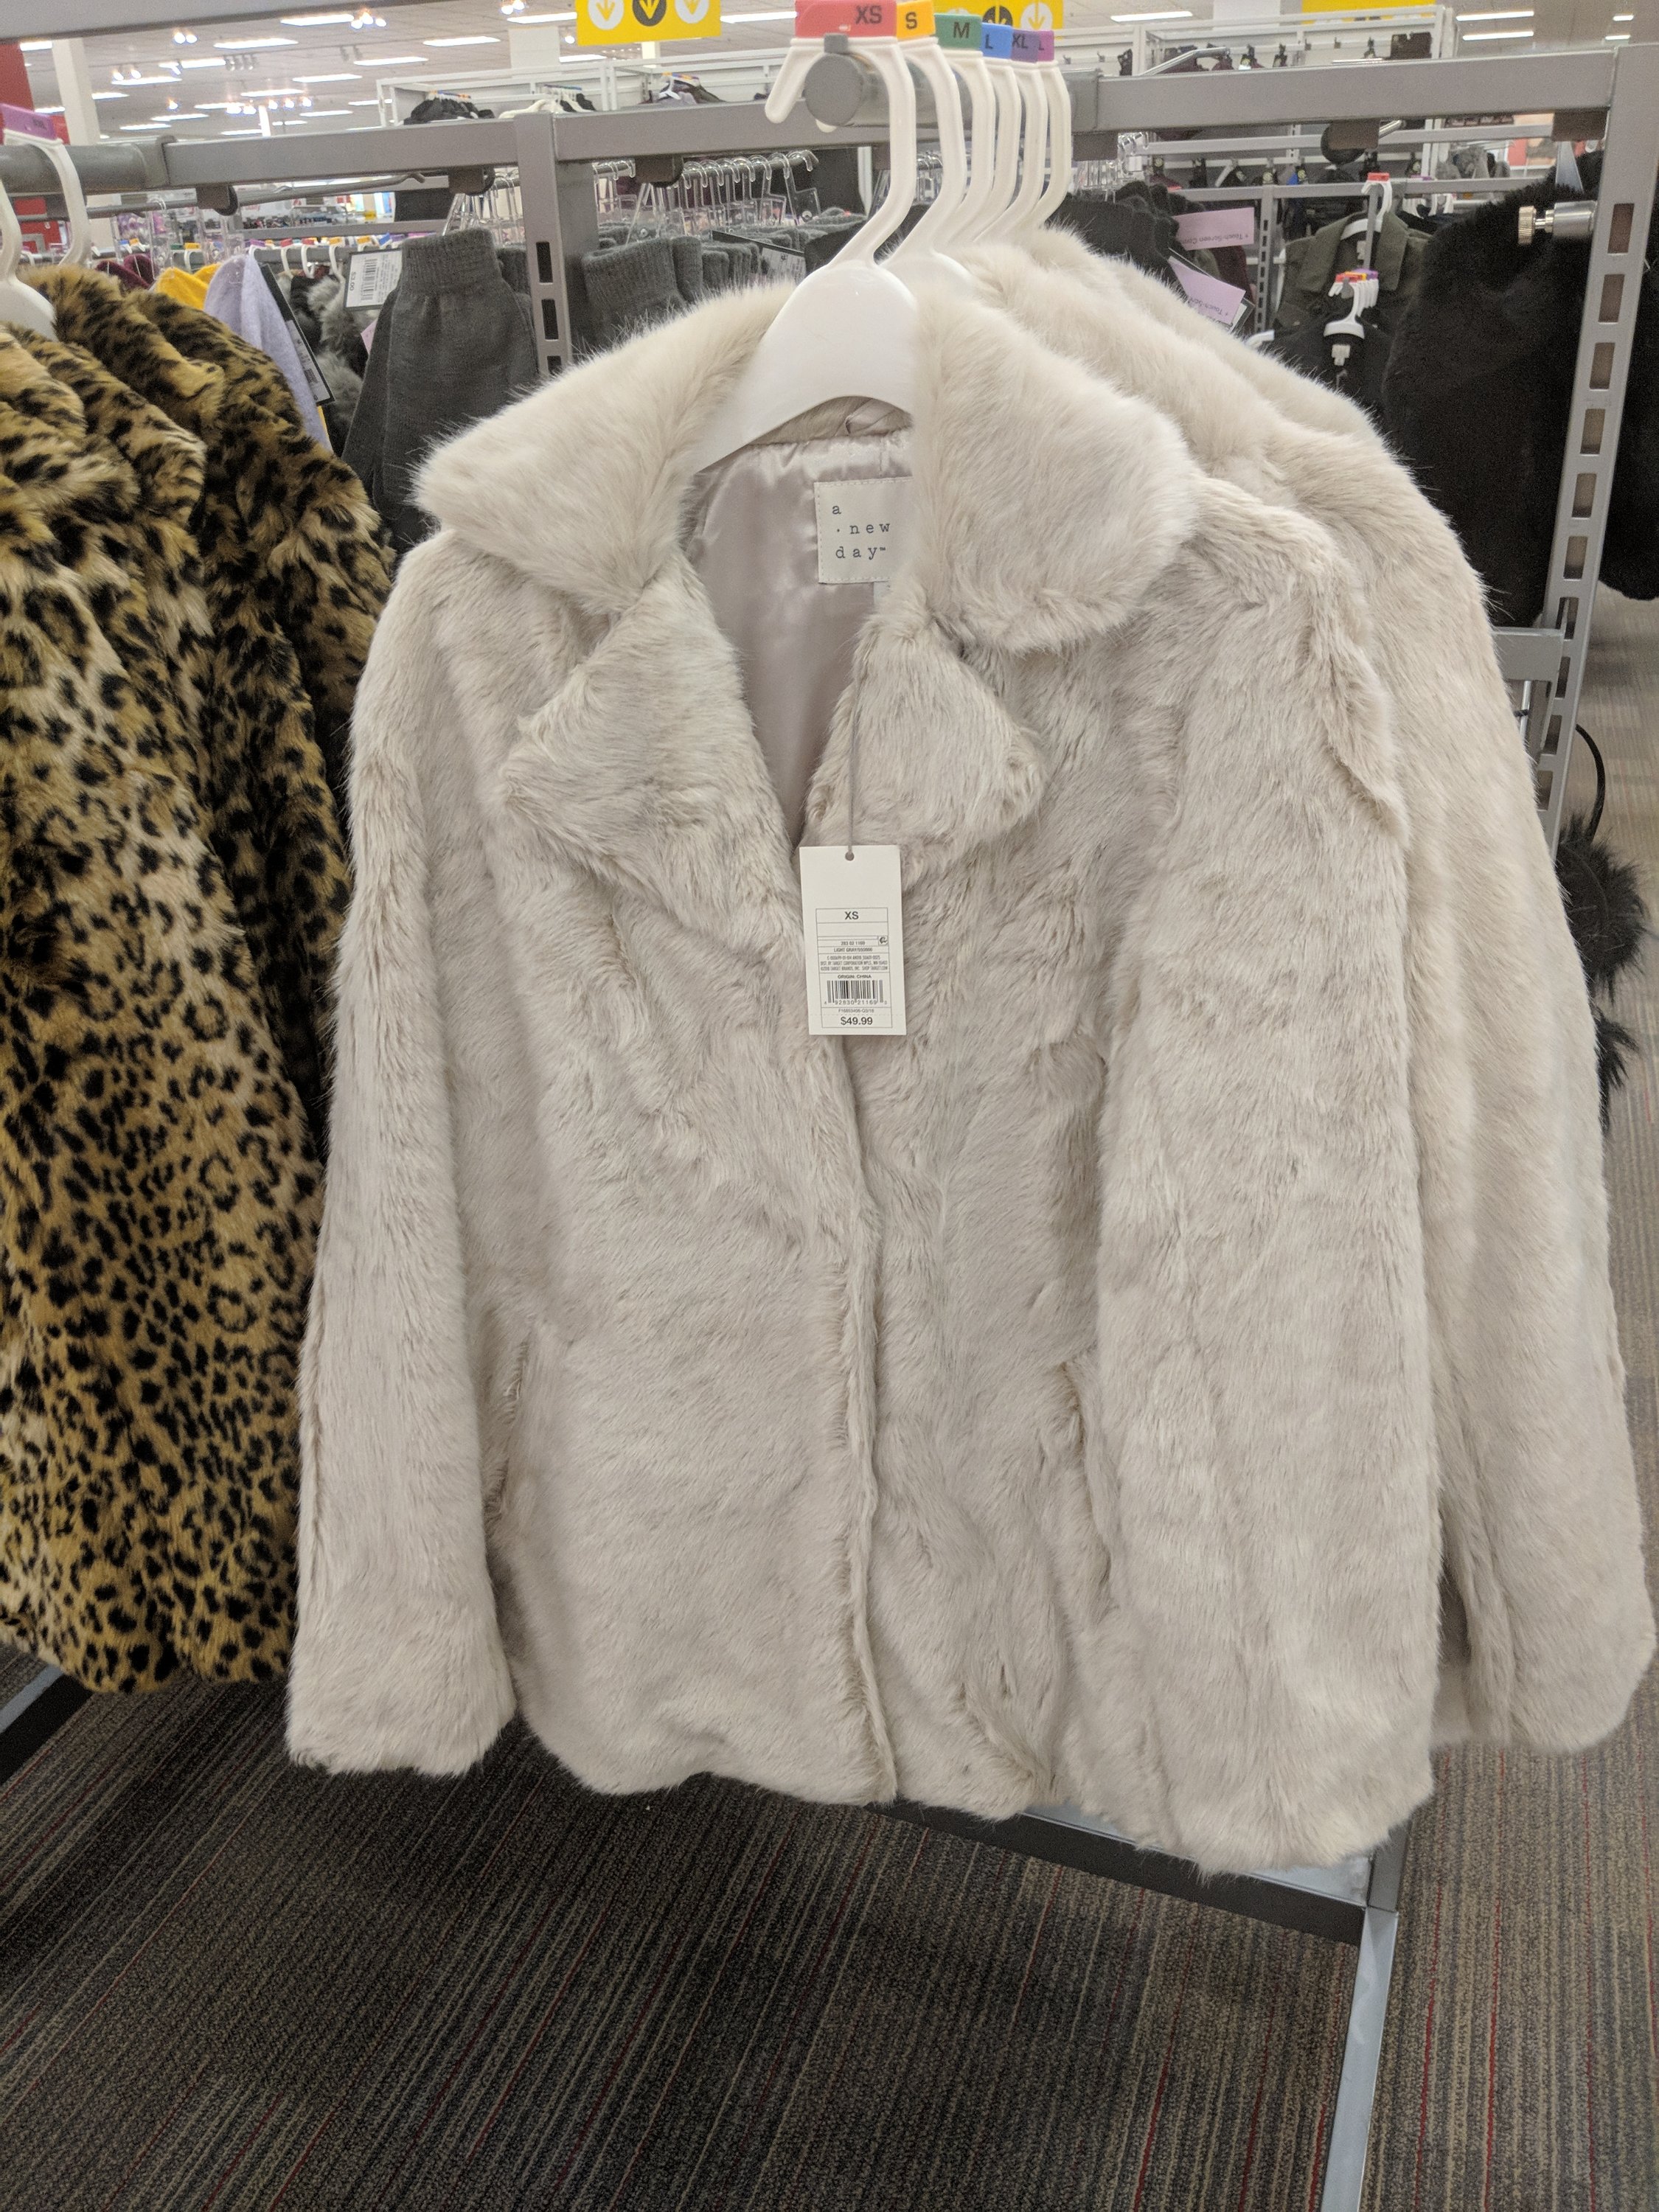 target fur jacket